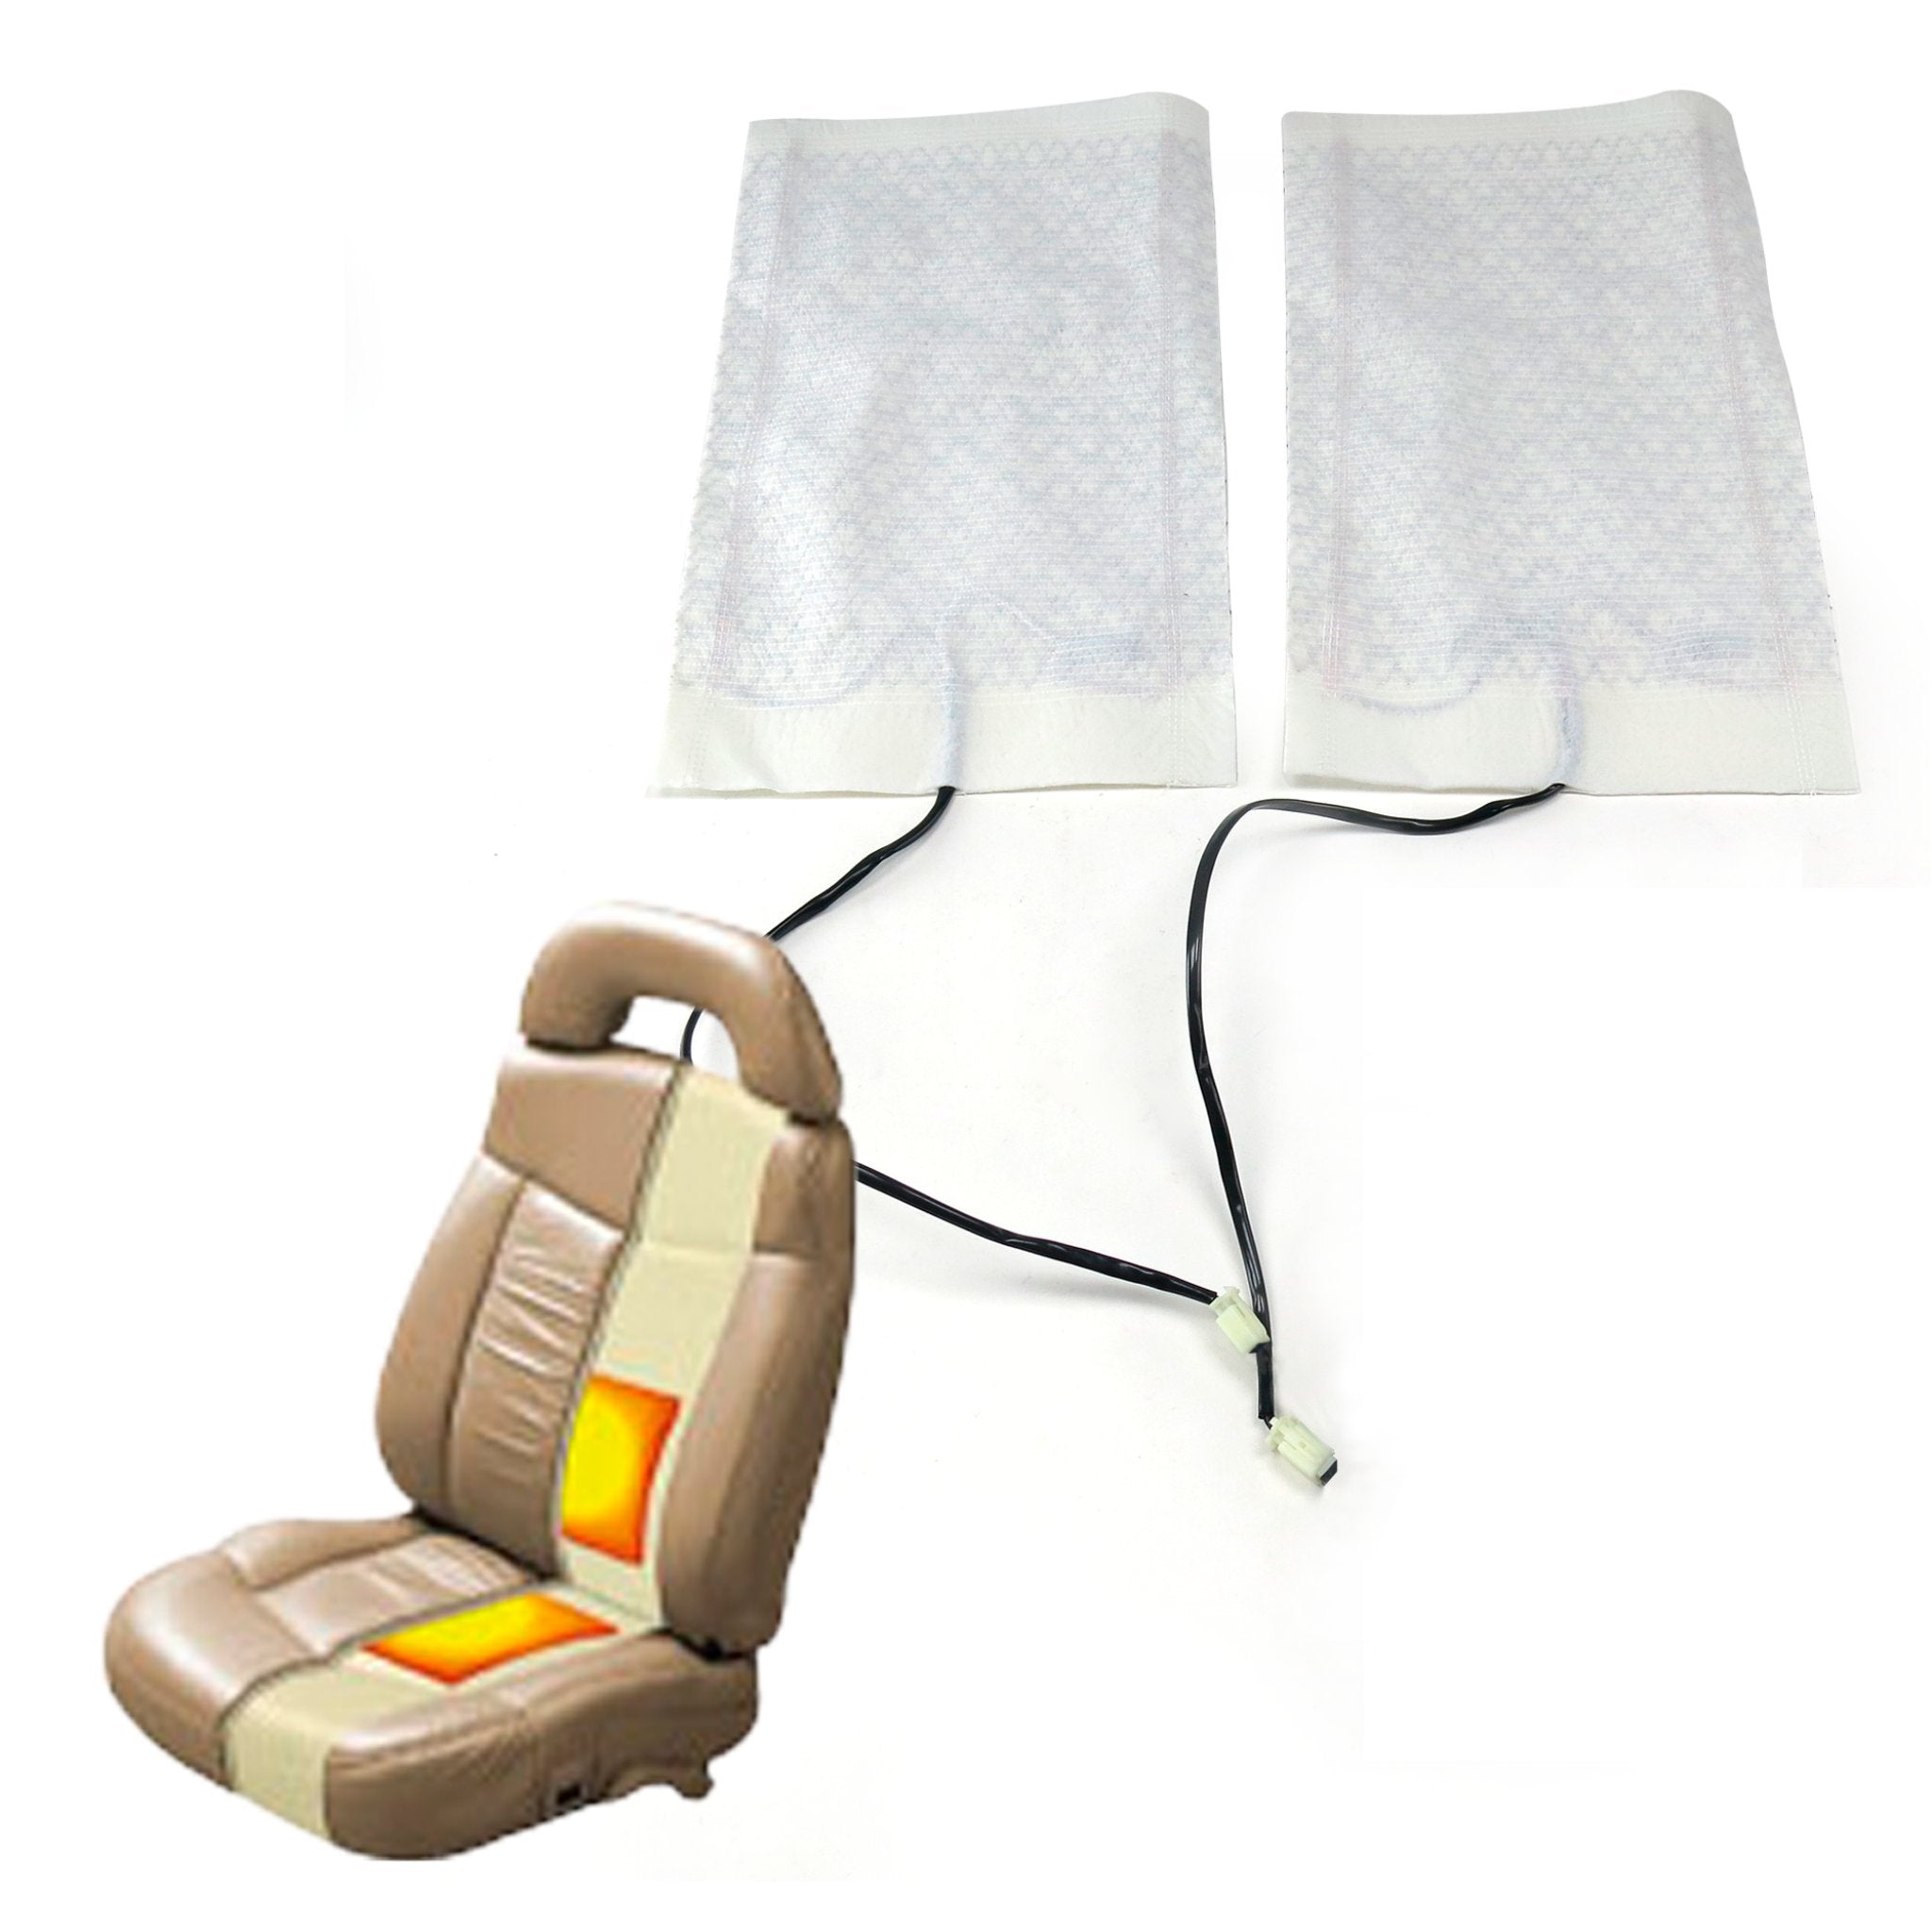 Kit de asiento con calefacción universal para coche de 12 V, 2 elementos de fibra de carbono, calienta 1 asiento y respaldo